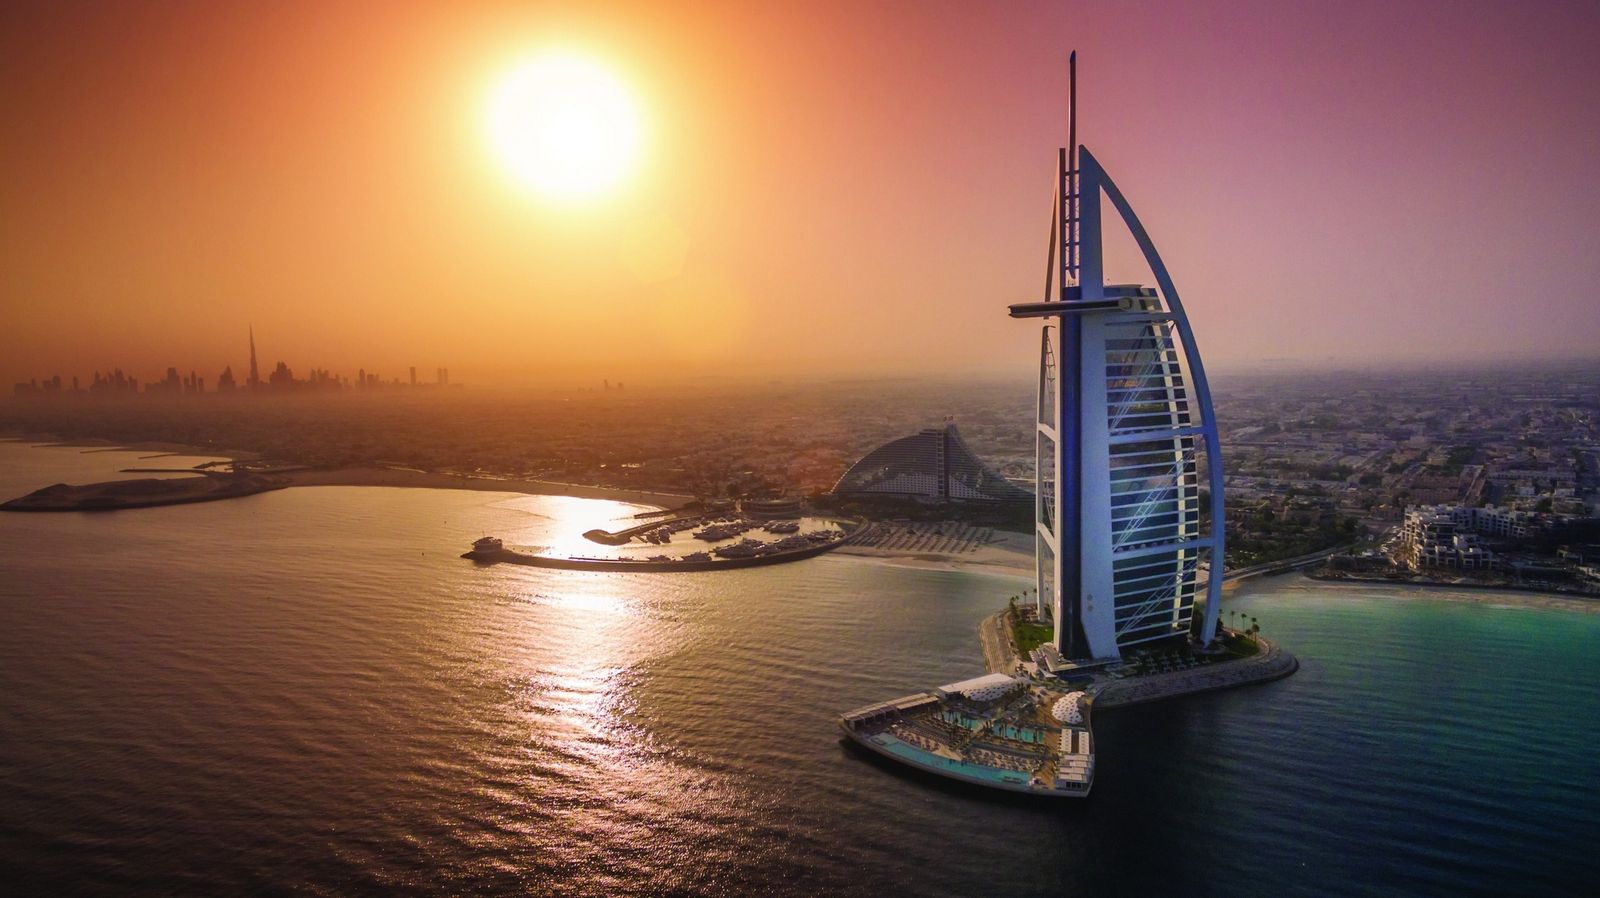 وبعد عقدين من الزمن، من الآمن أن نقول إن برج العرب الشهير في دبي هو بالفعل رمز مبهر للرفاهية العربية، ولكنه بالتأكيد ليس فندق سبع نجوم.